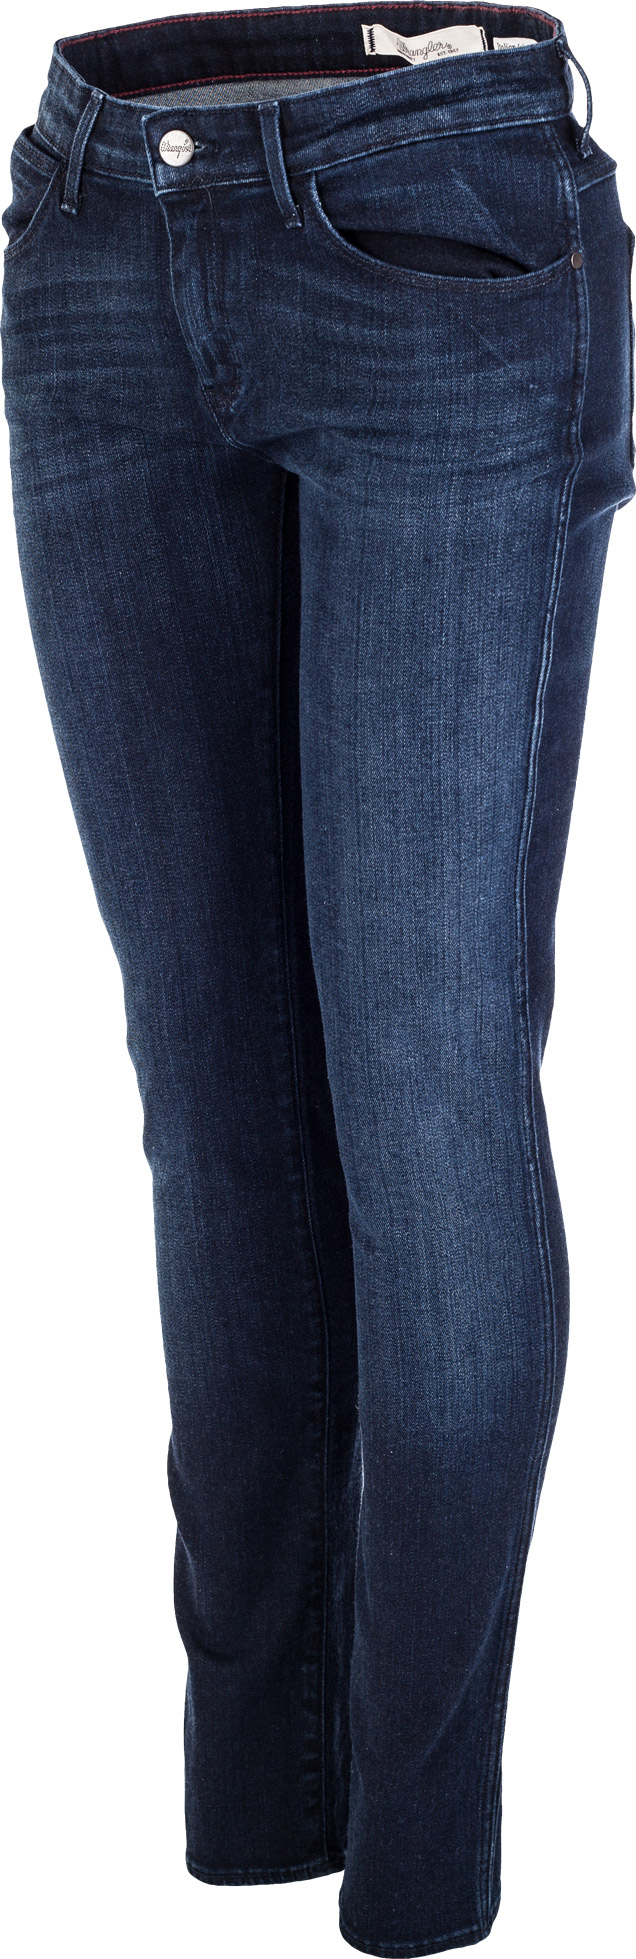 CORYNN BLUE SHELTER - Dámske denimové nohavice